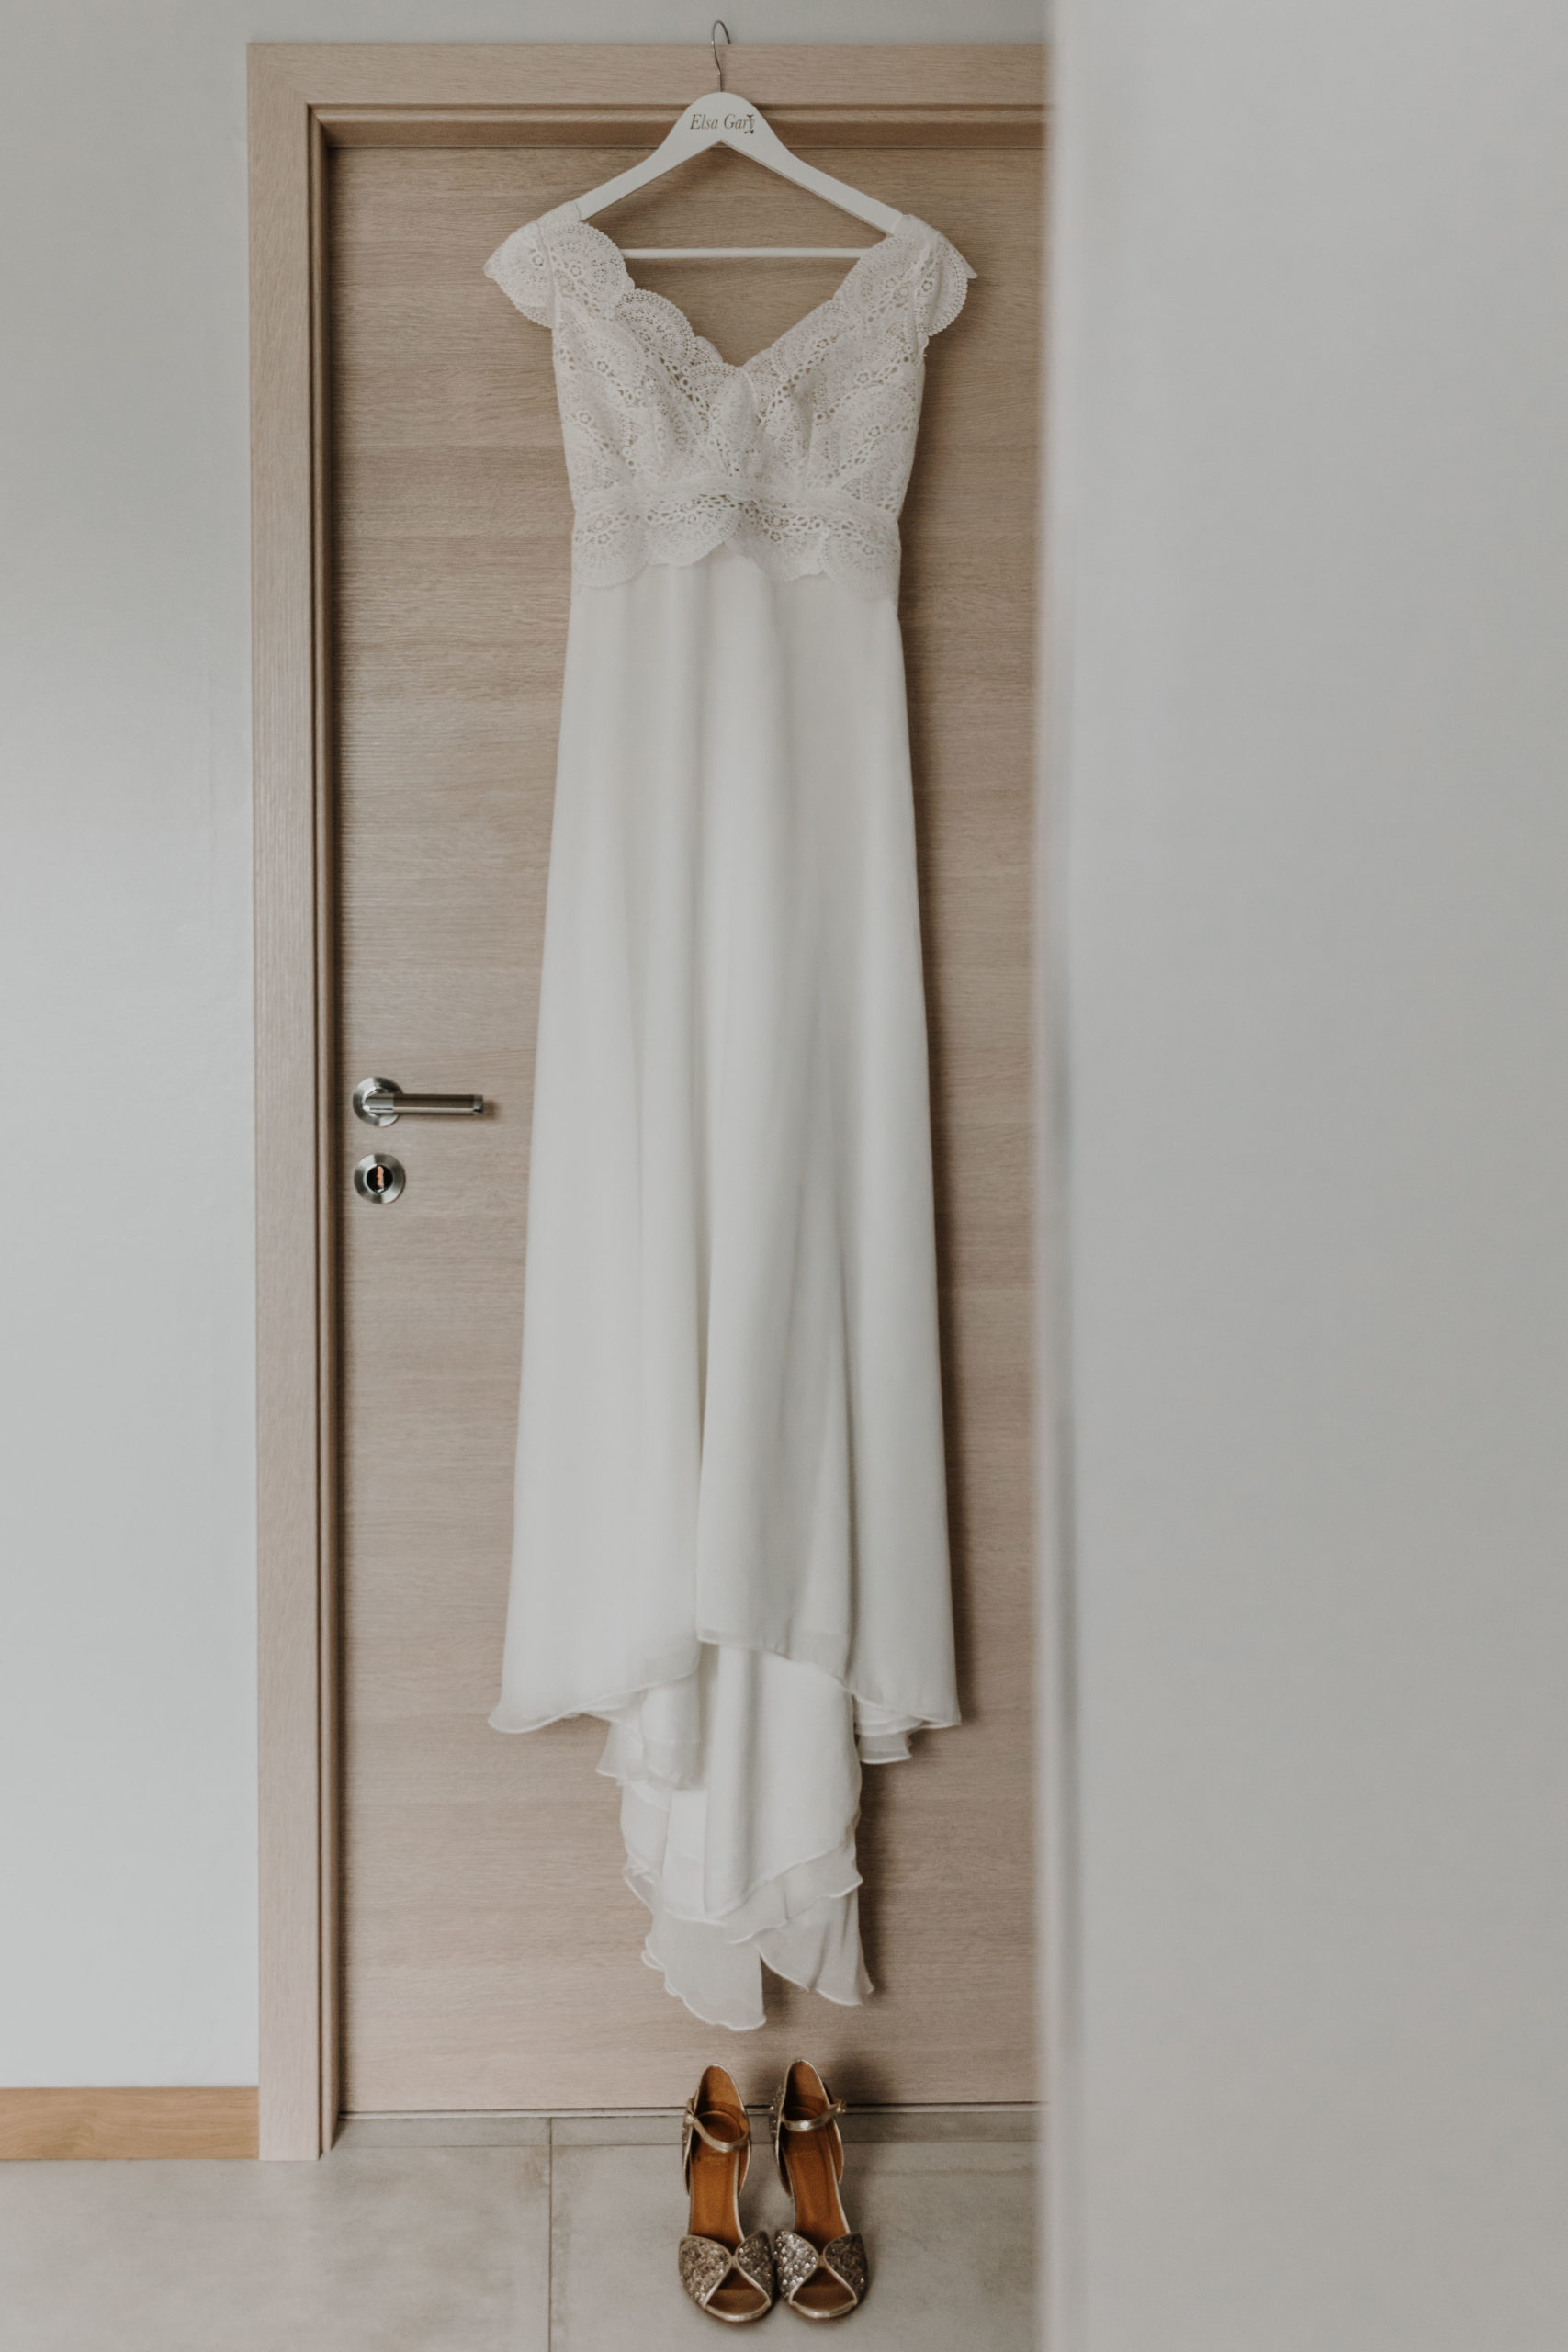 la robe de mariée accrochée sur son cintre